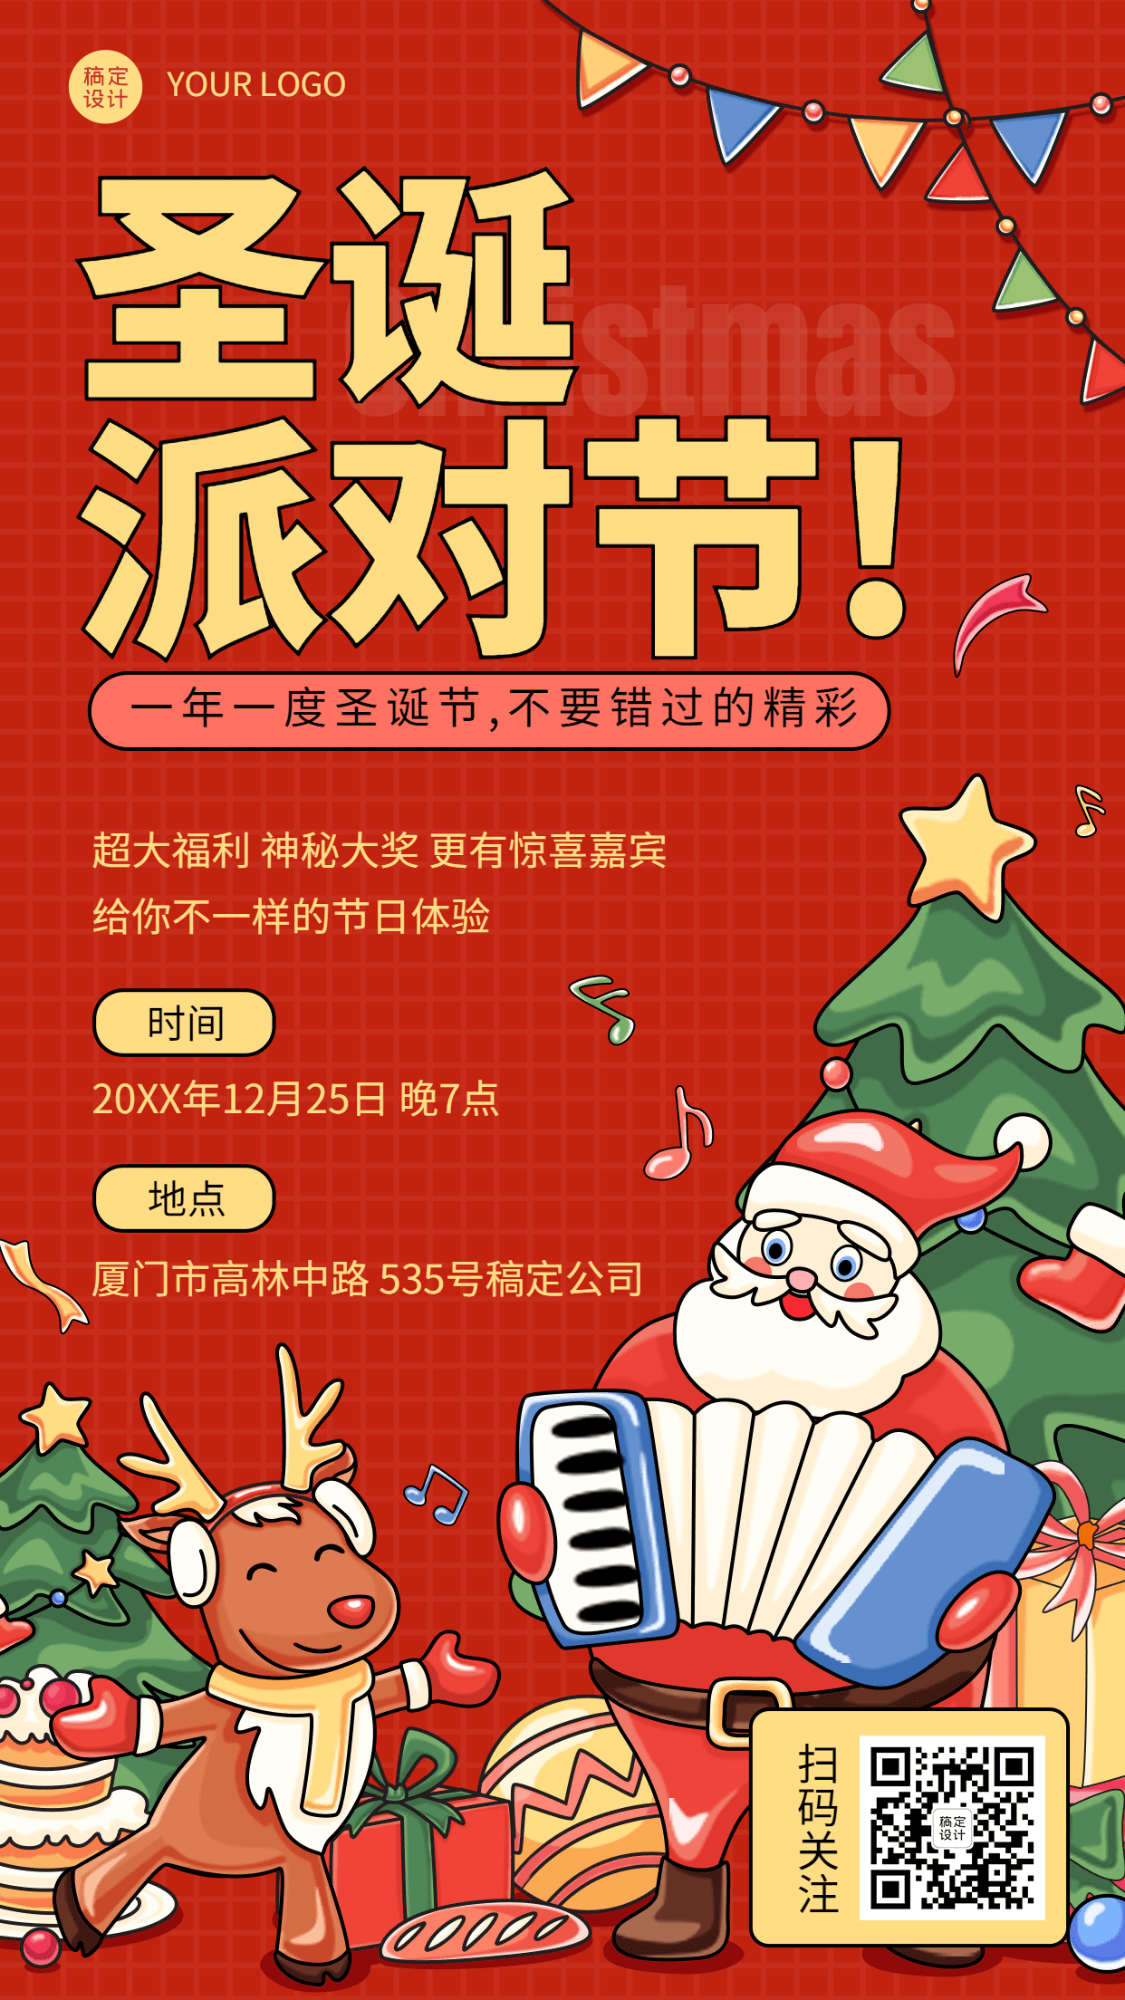 圣诞节活动圣诞老人插画手机海报